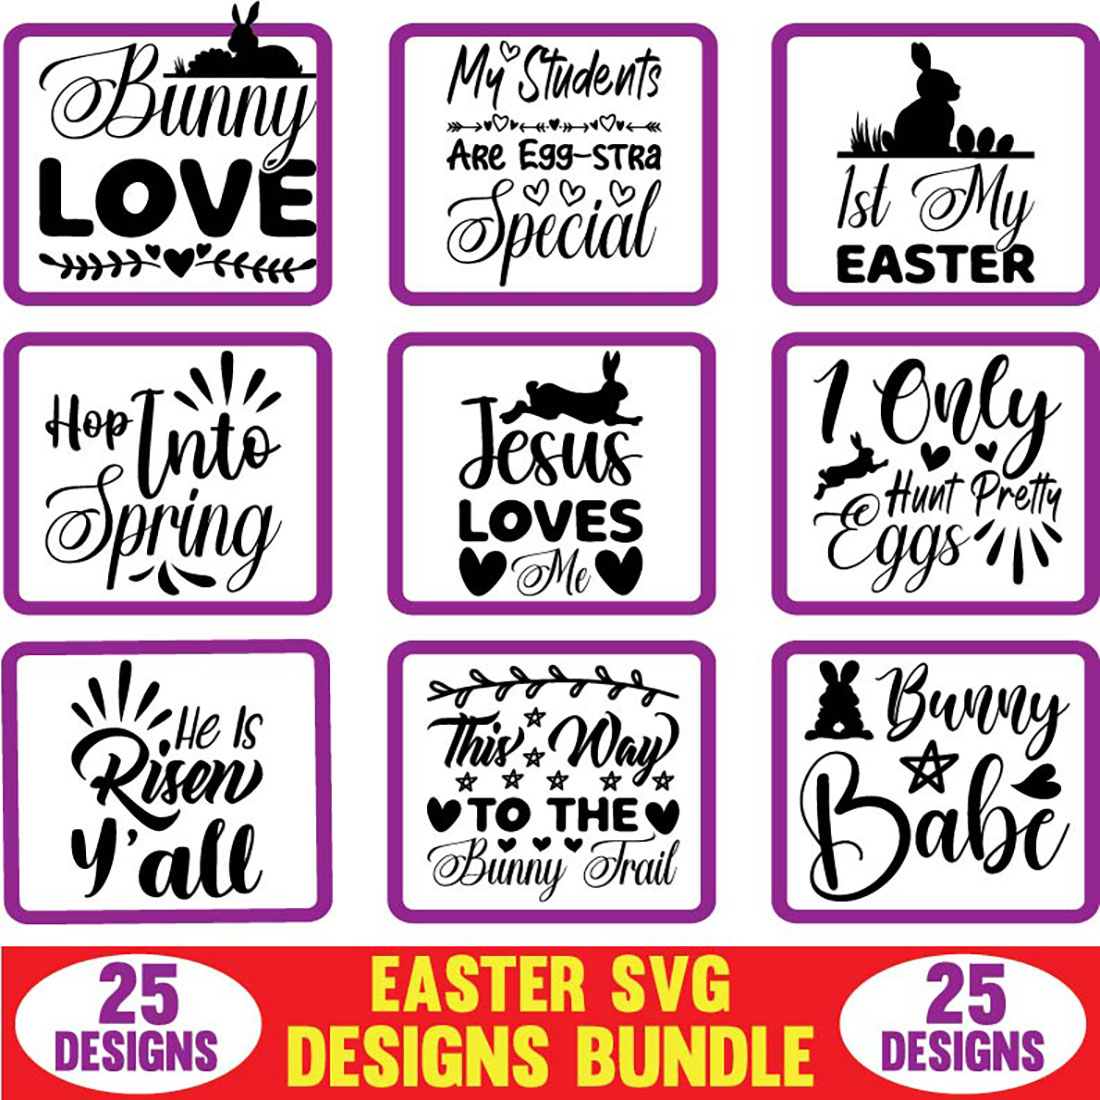 Easter SVG Designs Bundle cover image.